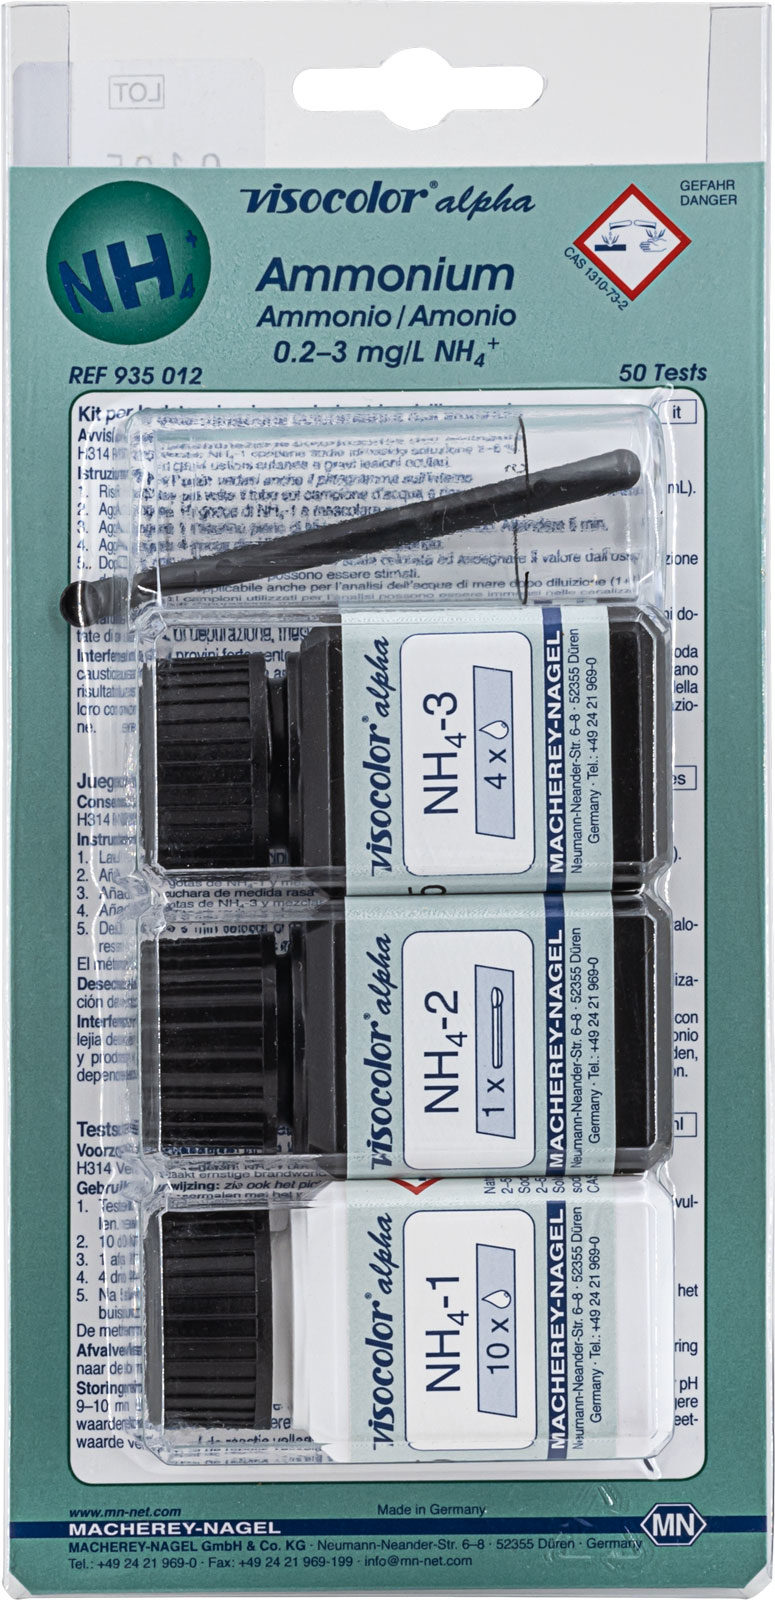 VISOCOLOR® alpha Ammonium Test Kit